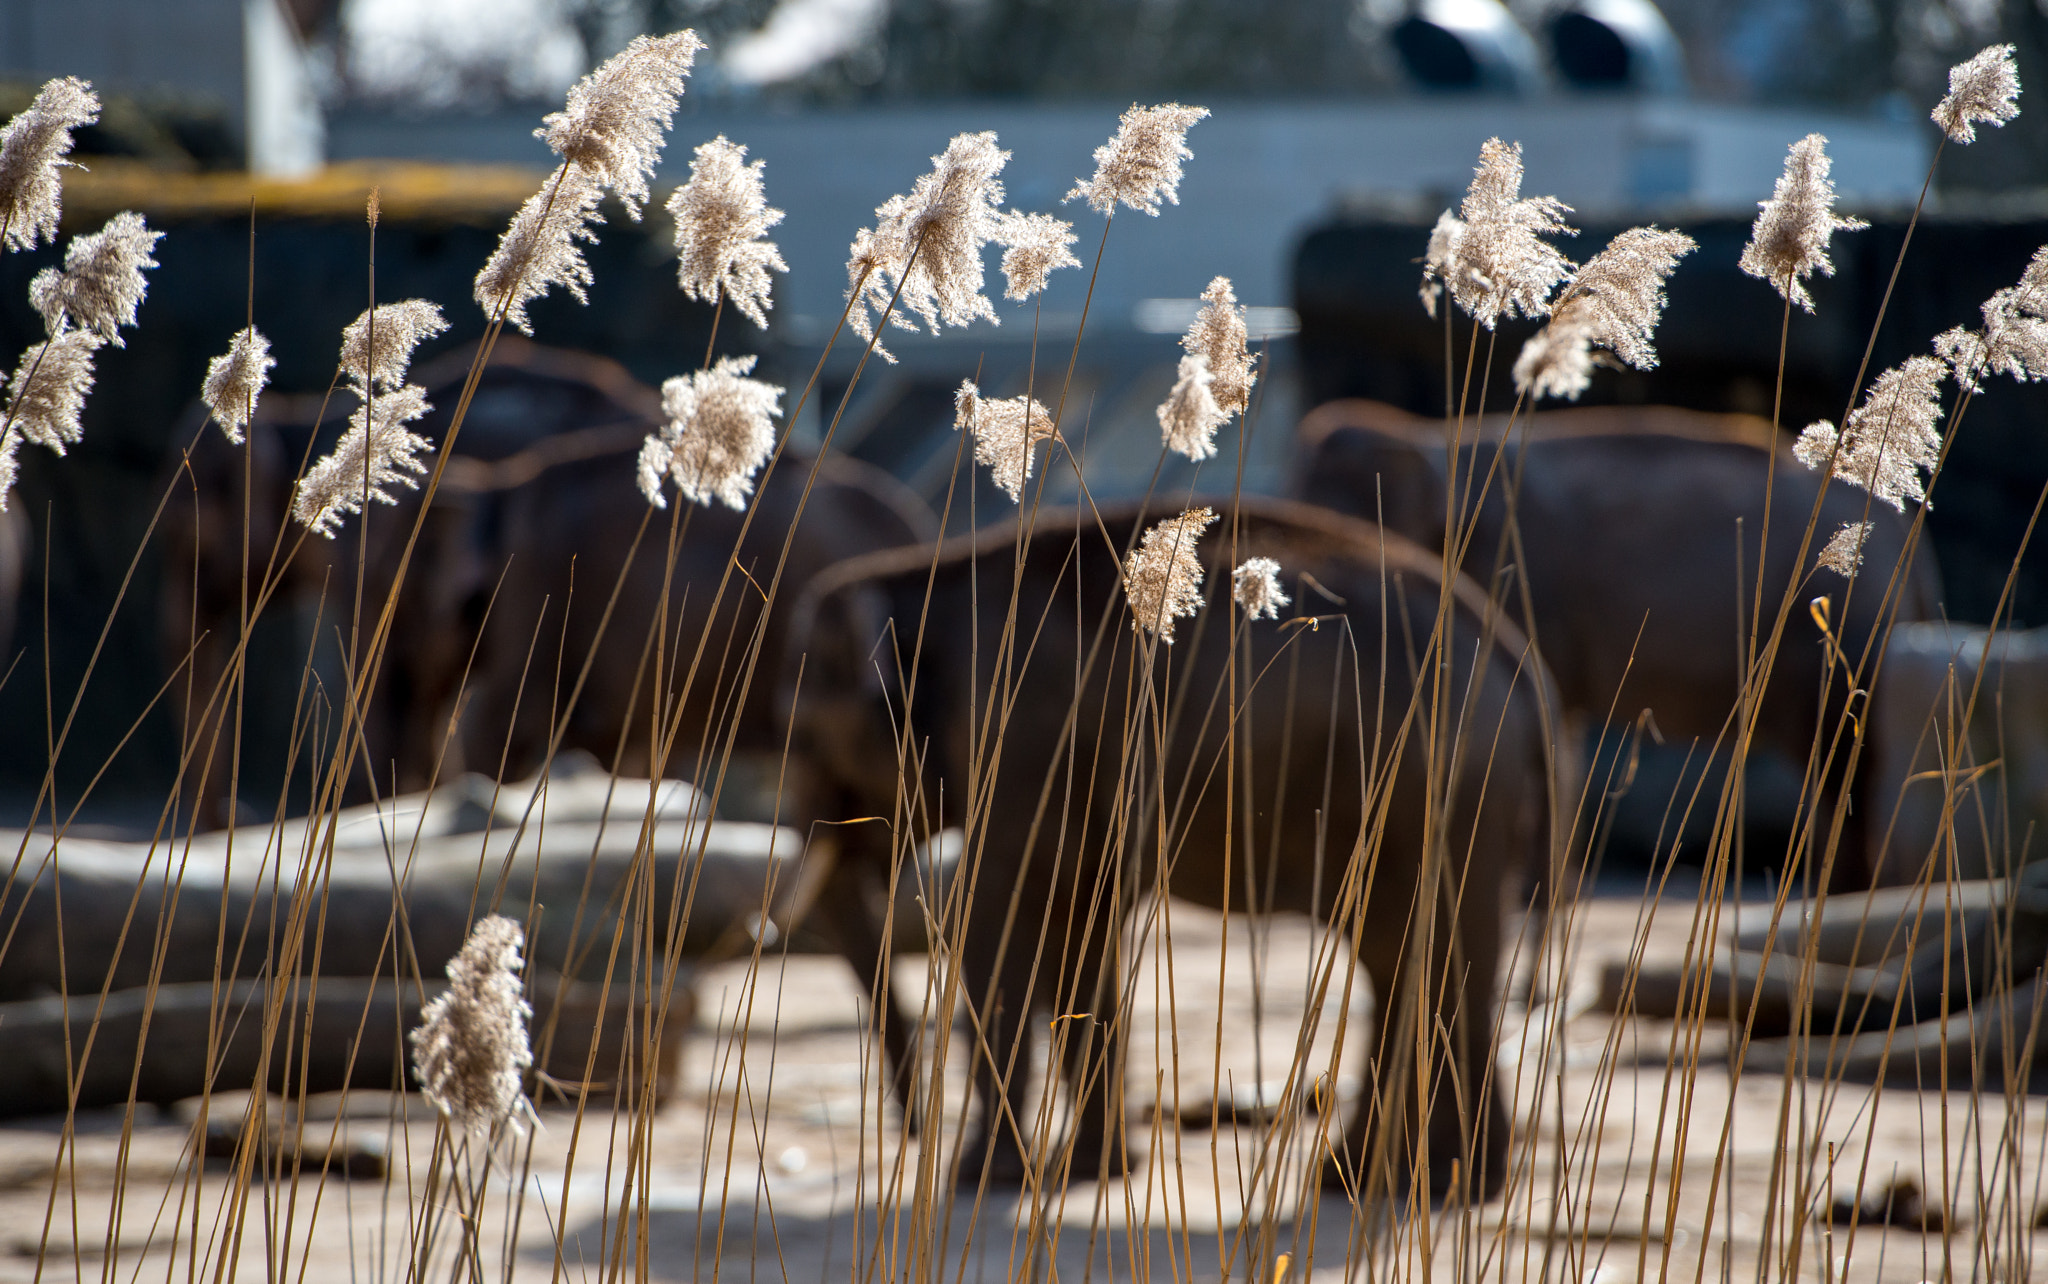 Nikon D800E sample photo. Elephanten hinter pampasgras photography